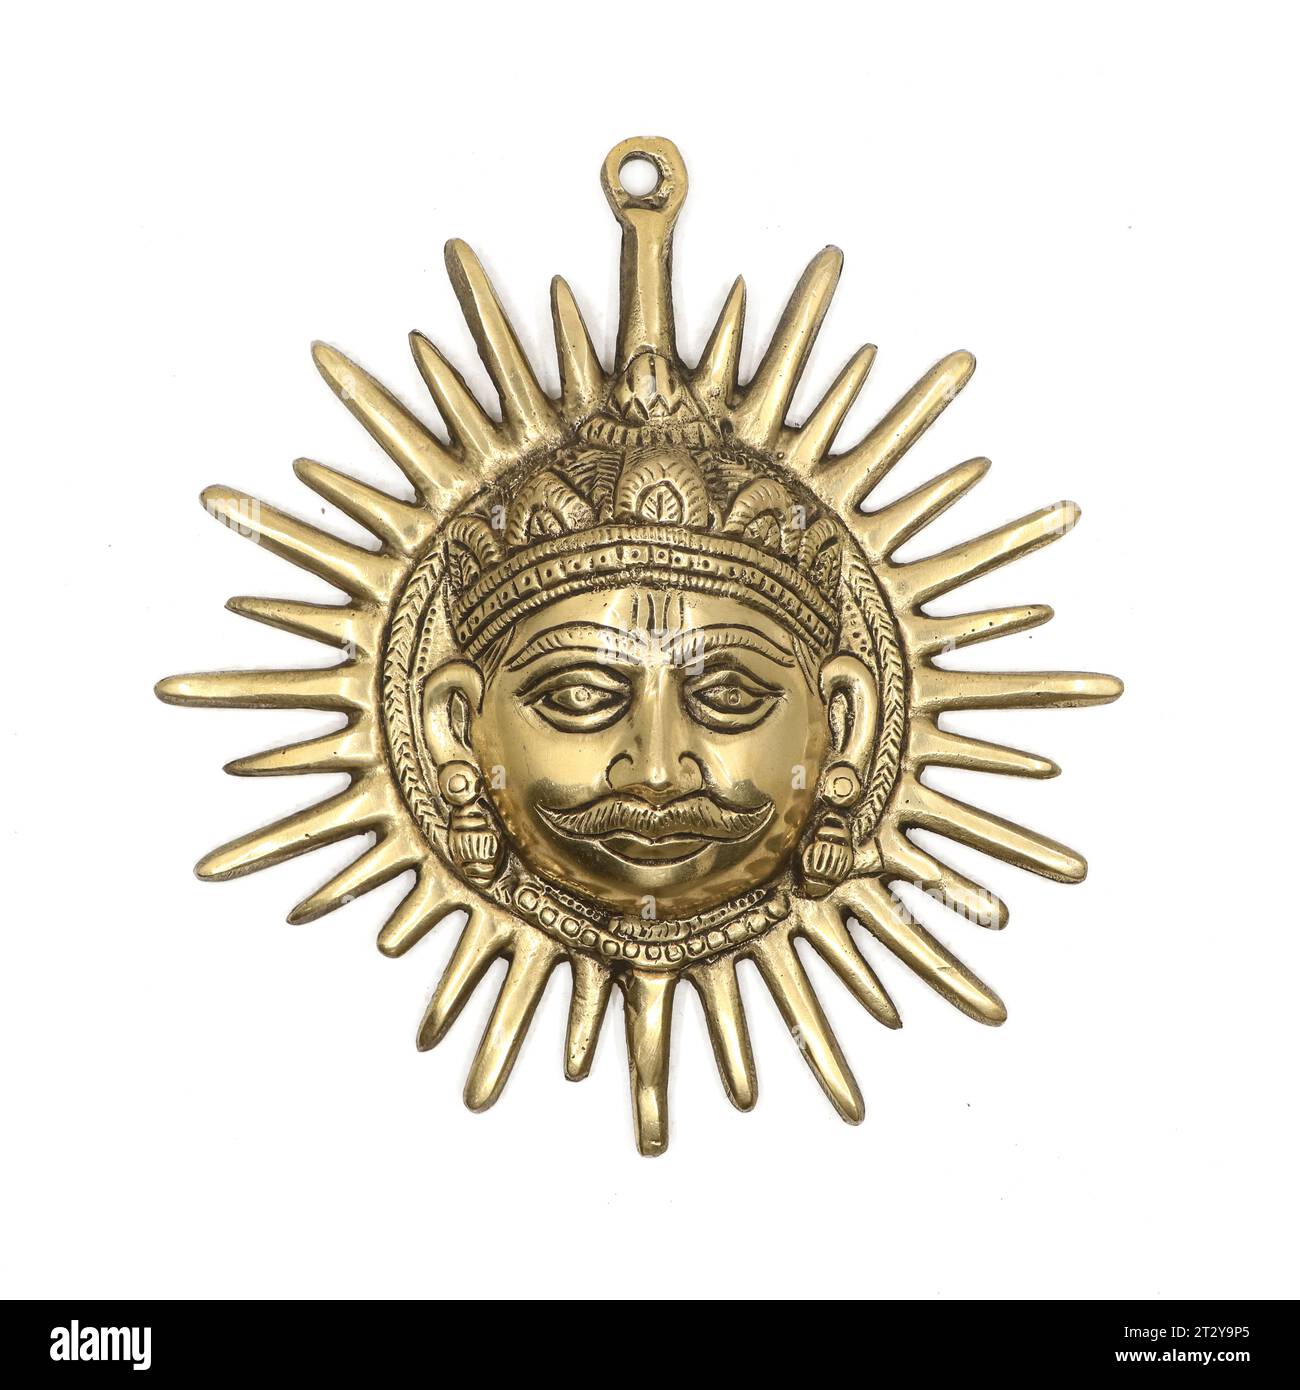 Religiöse Anhänger Skulptur der Strahlen des goldenen Sonnengottes König isoliert auf einem weißen Hintergrund Stockfoto